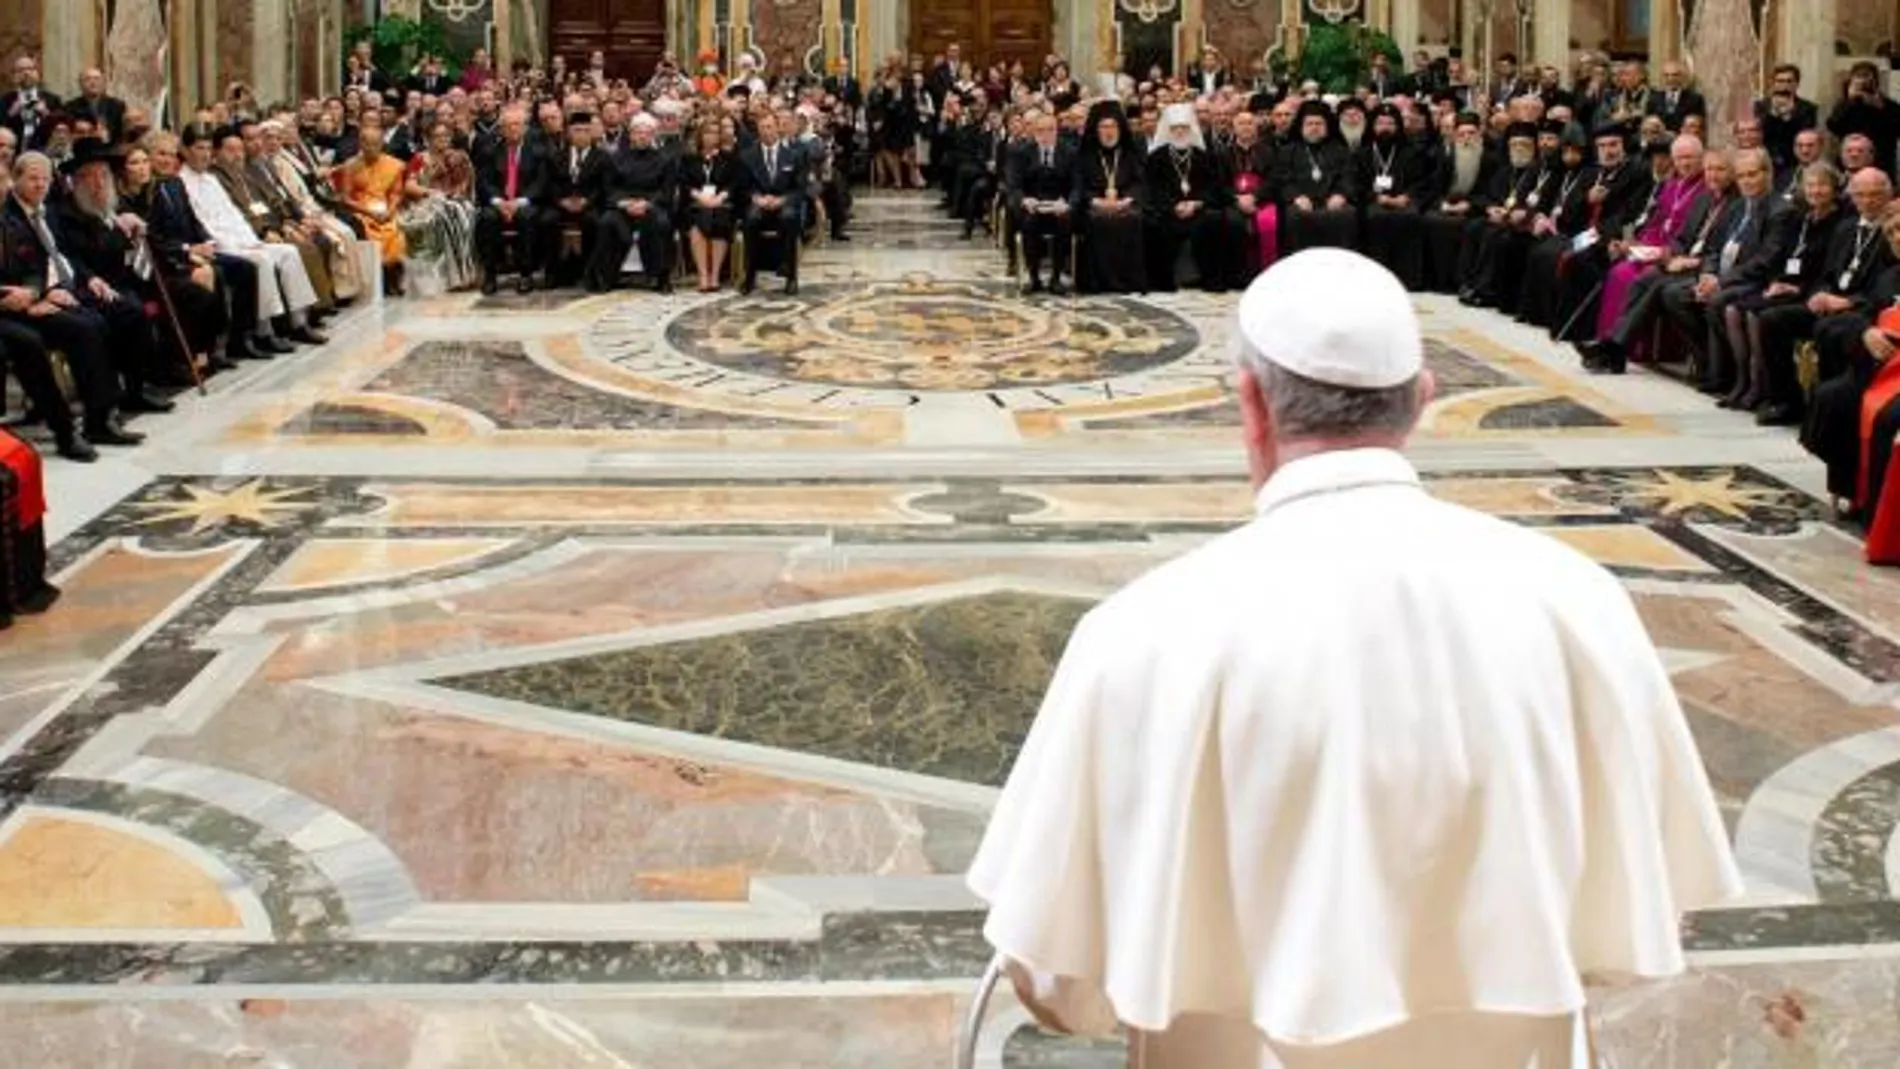 Imagen cedida por el periódico L'Osservatore Romano el 30 de septiembre del 2013 del papa Francisco durante la reunión Internacional por la Paz, en Ciudad del Vaticano